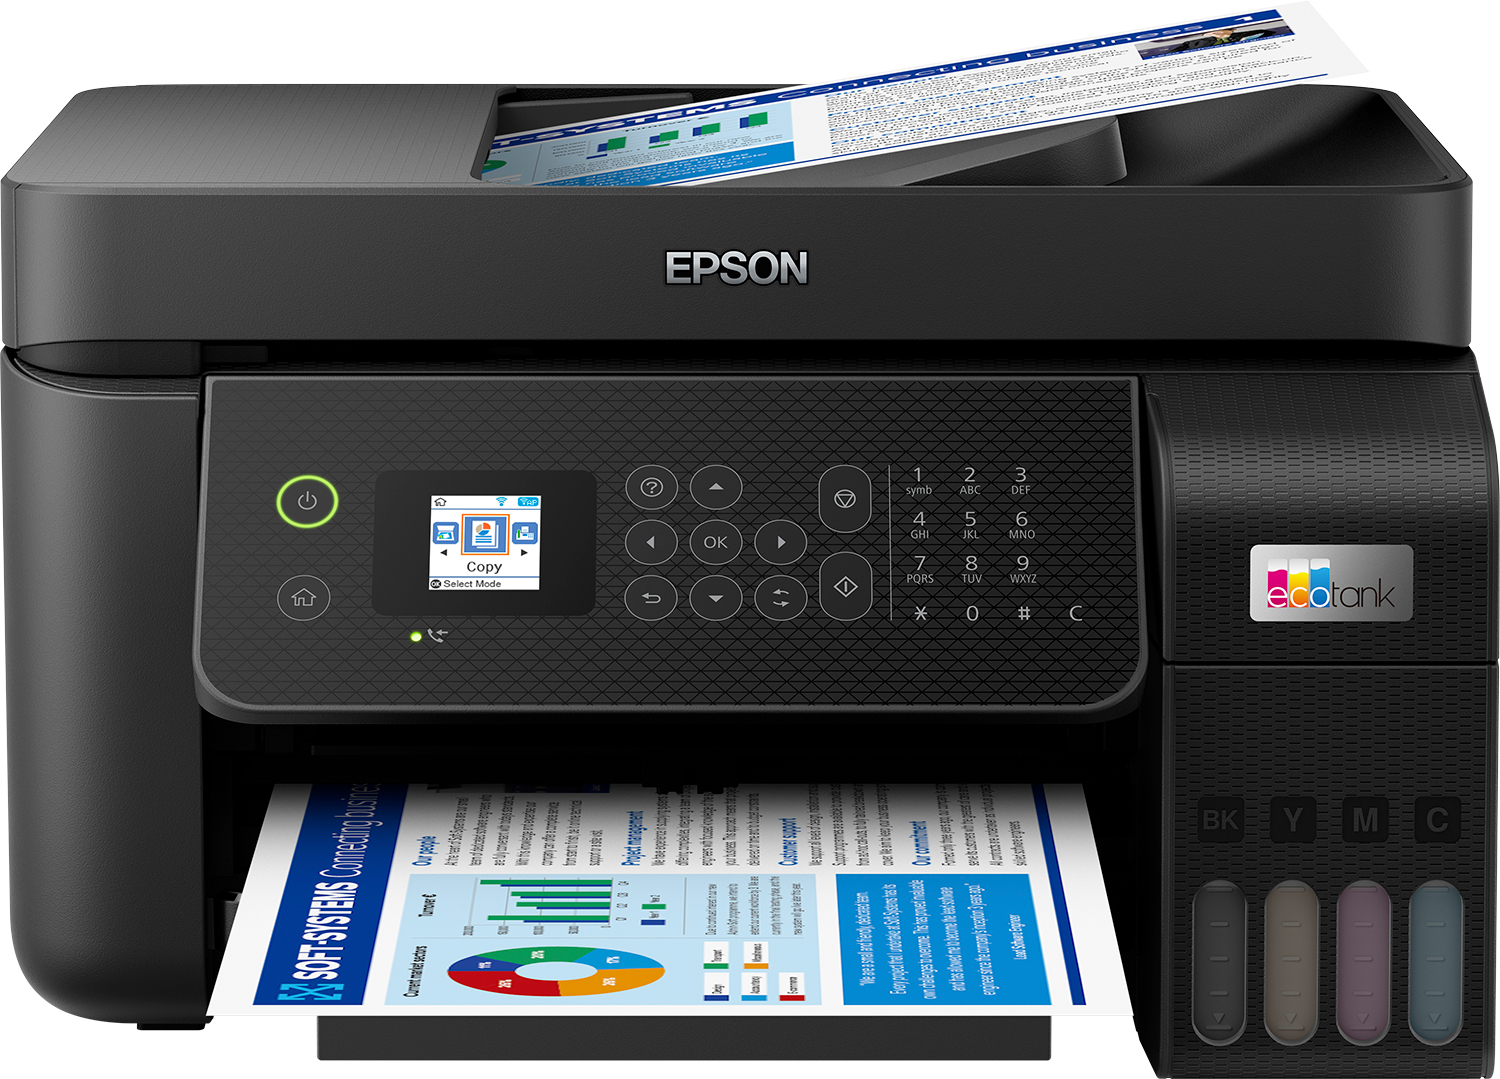 Image of Epson EcoTank ET-4800 stampante multifunzione inkjet 4-in-1 A4, serbatoi ricaricabili alta capacità, 5 flaconi inclusi pari a 14000pag B/N 5200pag colore, Wi-FI Direct, USB